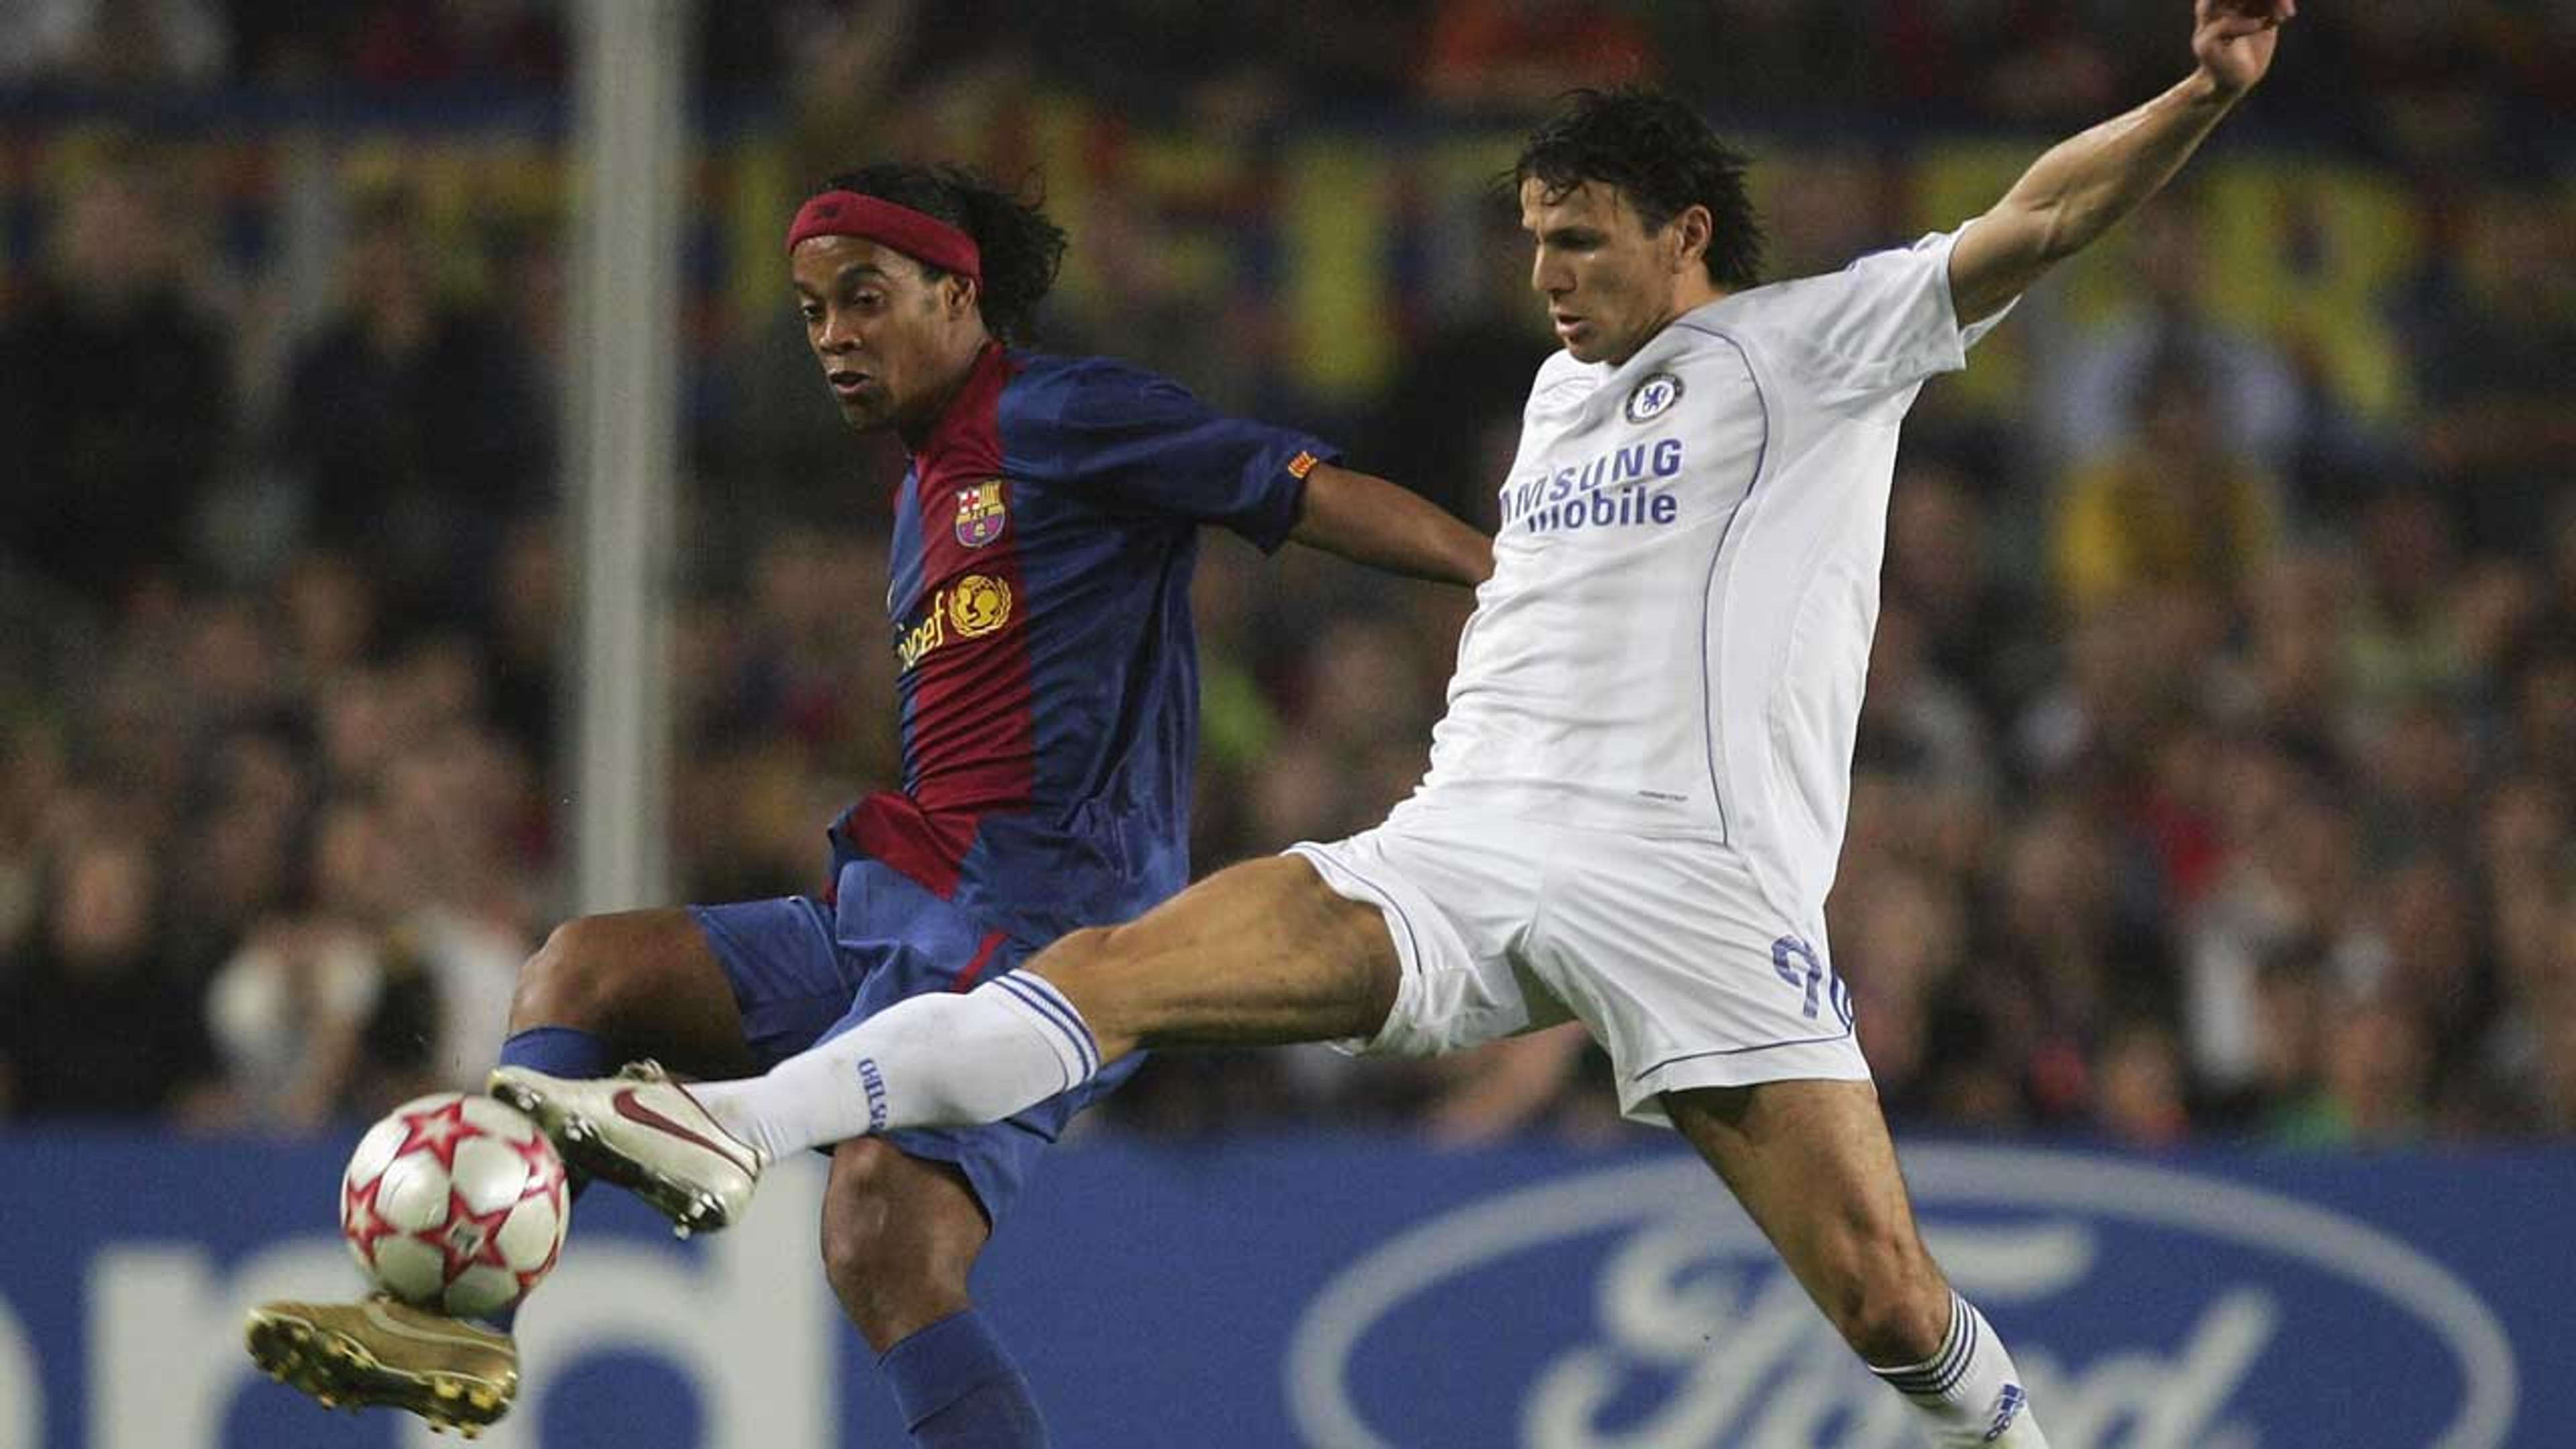 Khalid Boulahrouz and Ronaldinho